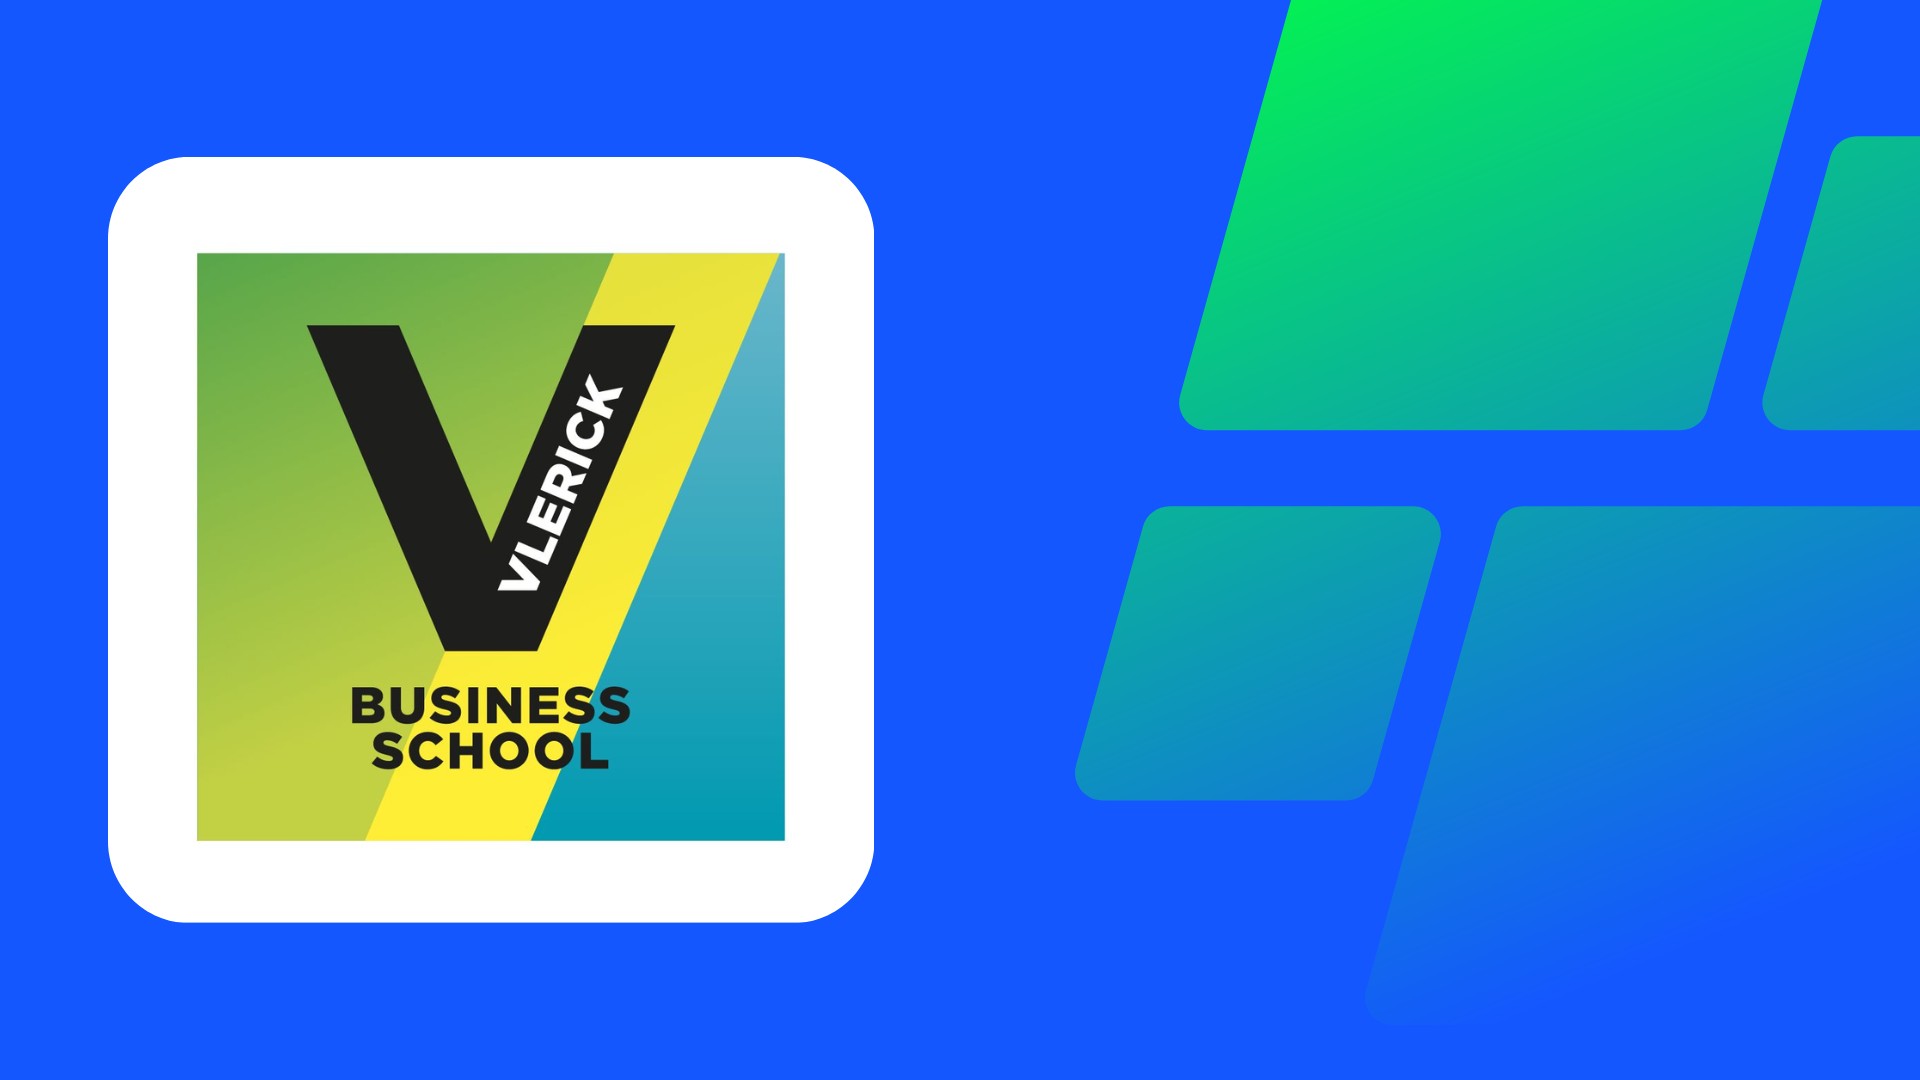 Tryve maakt gepersonaliseerde sjablonen voor Vlerick Business School om het management en de operationele opvolging te verbeteren